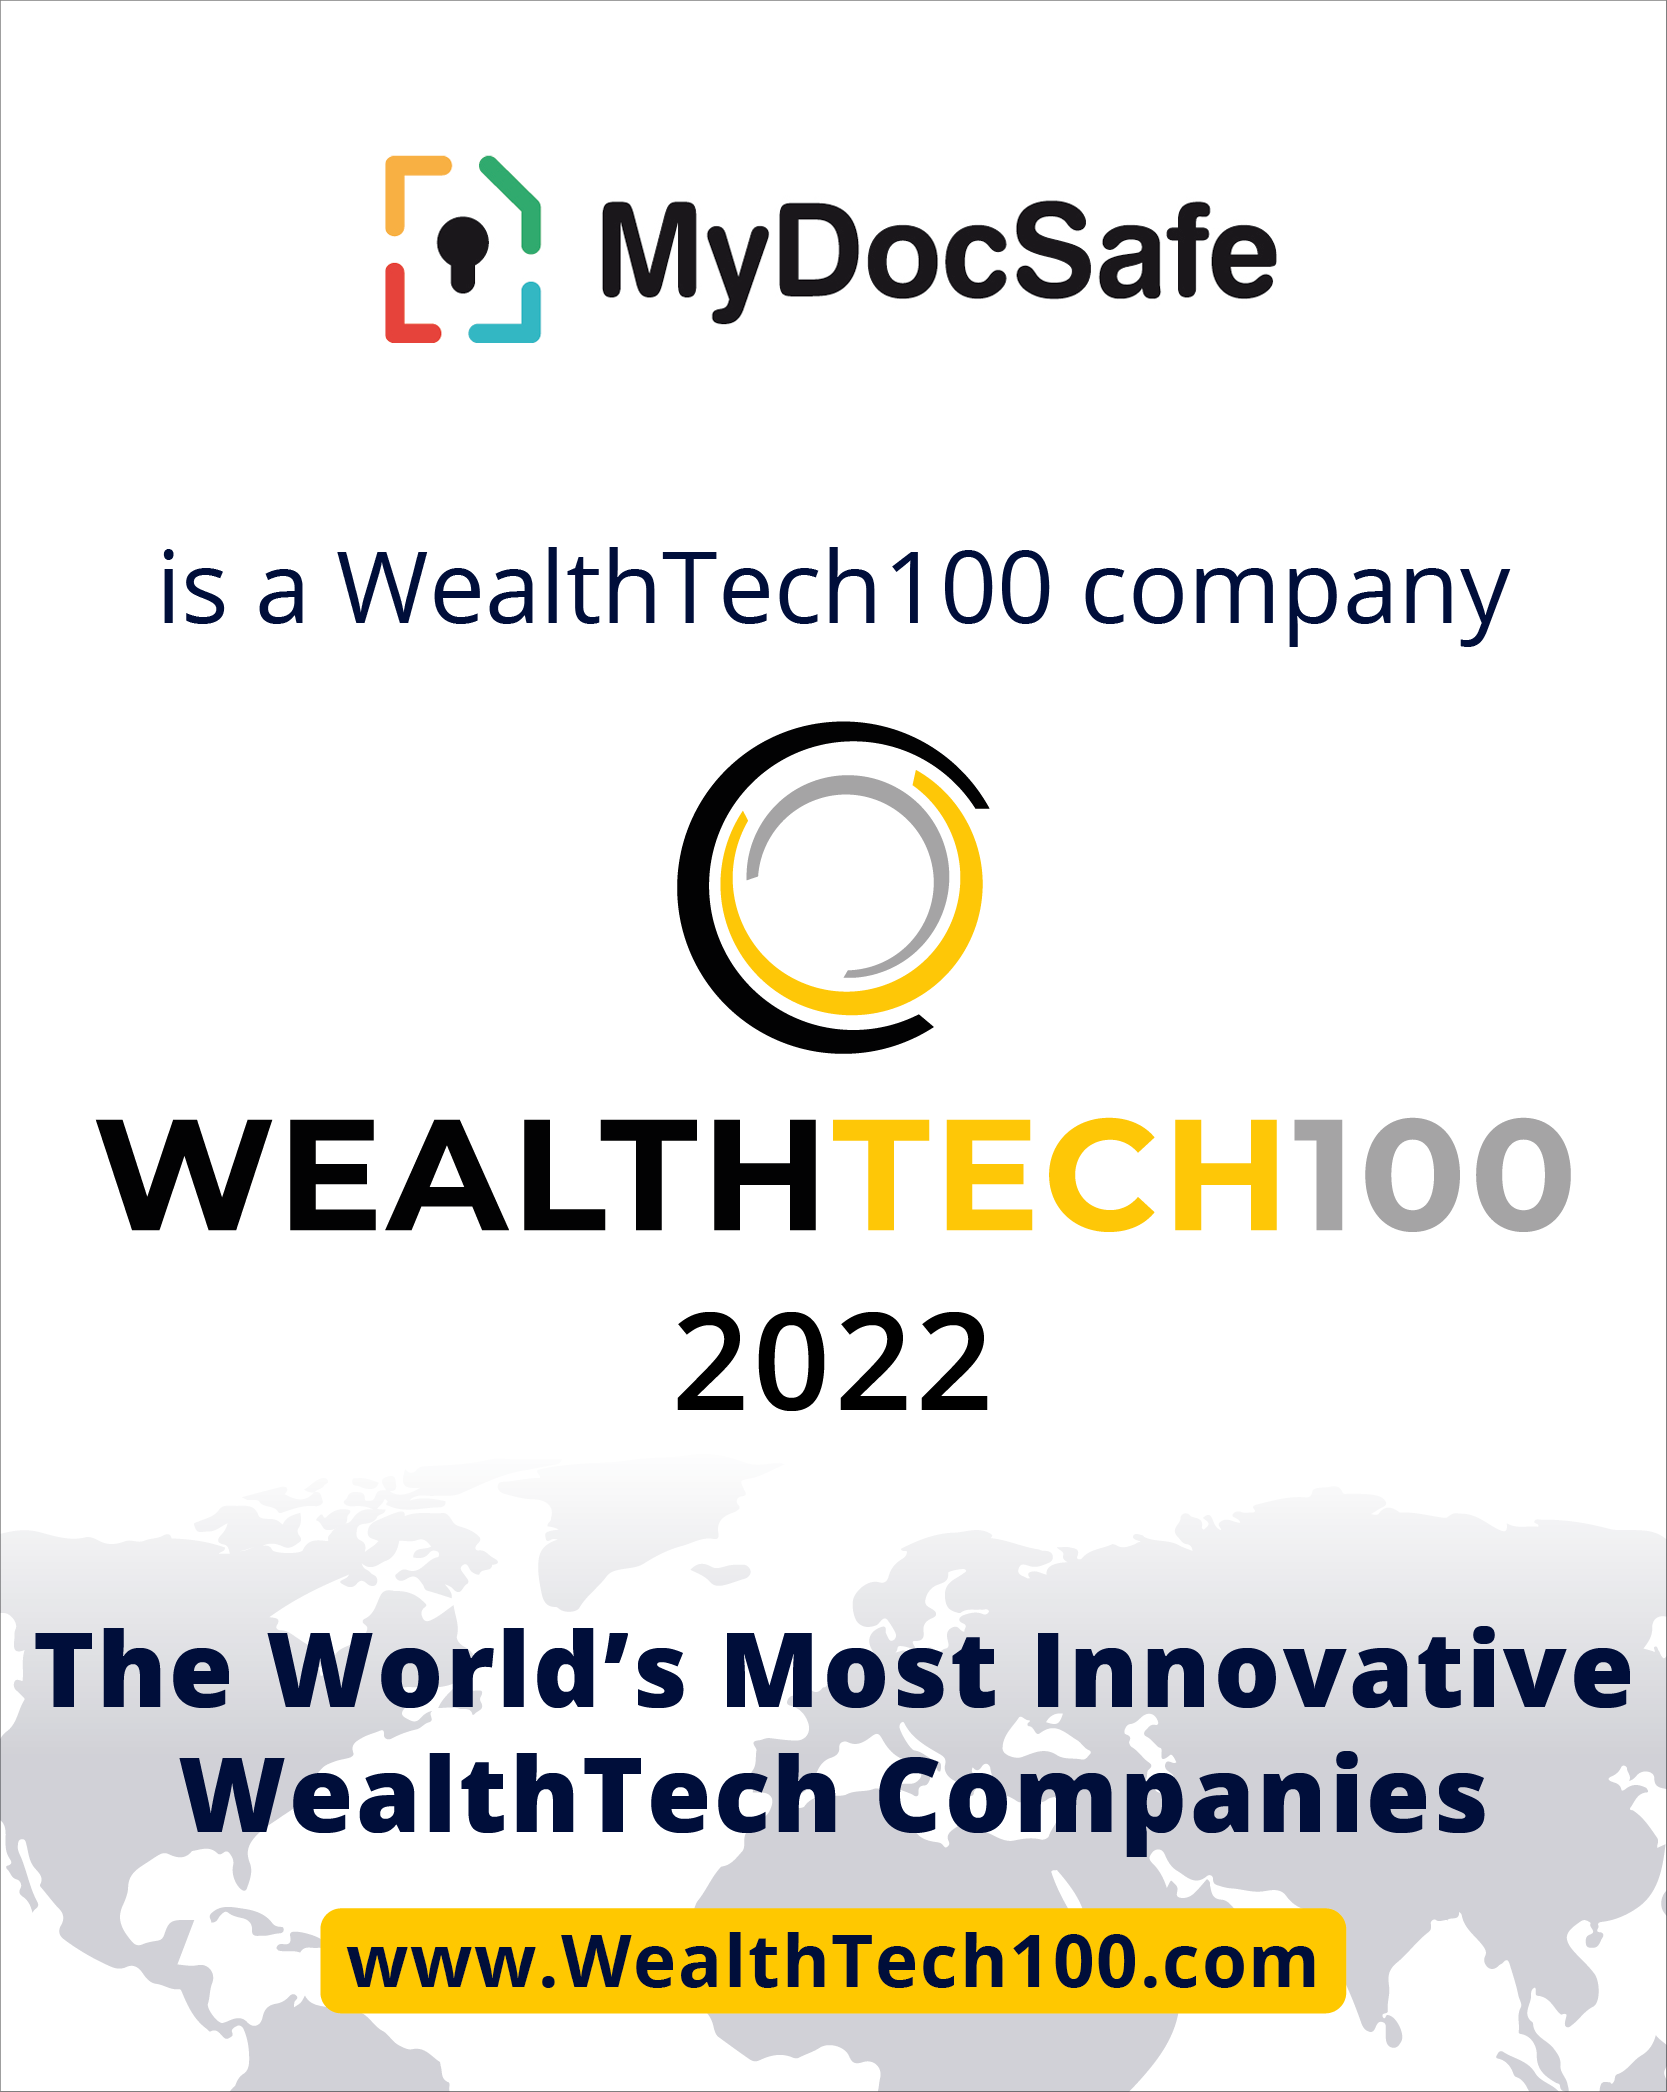 MyDocSafe is a WealthTech100 company